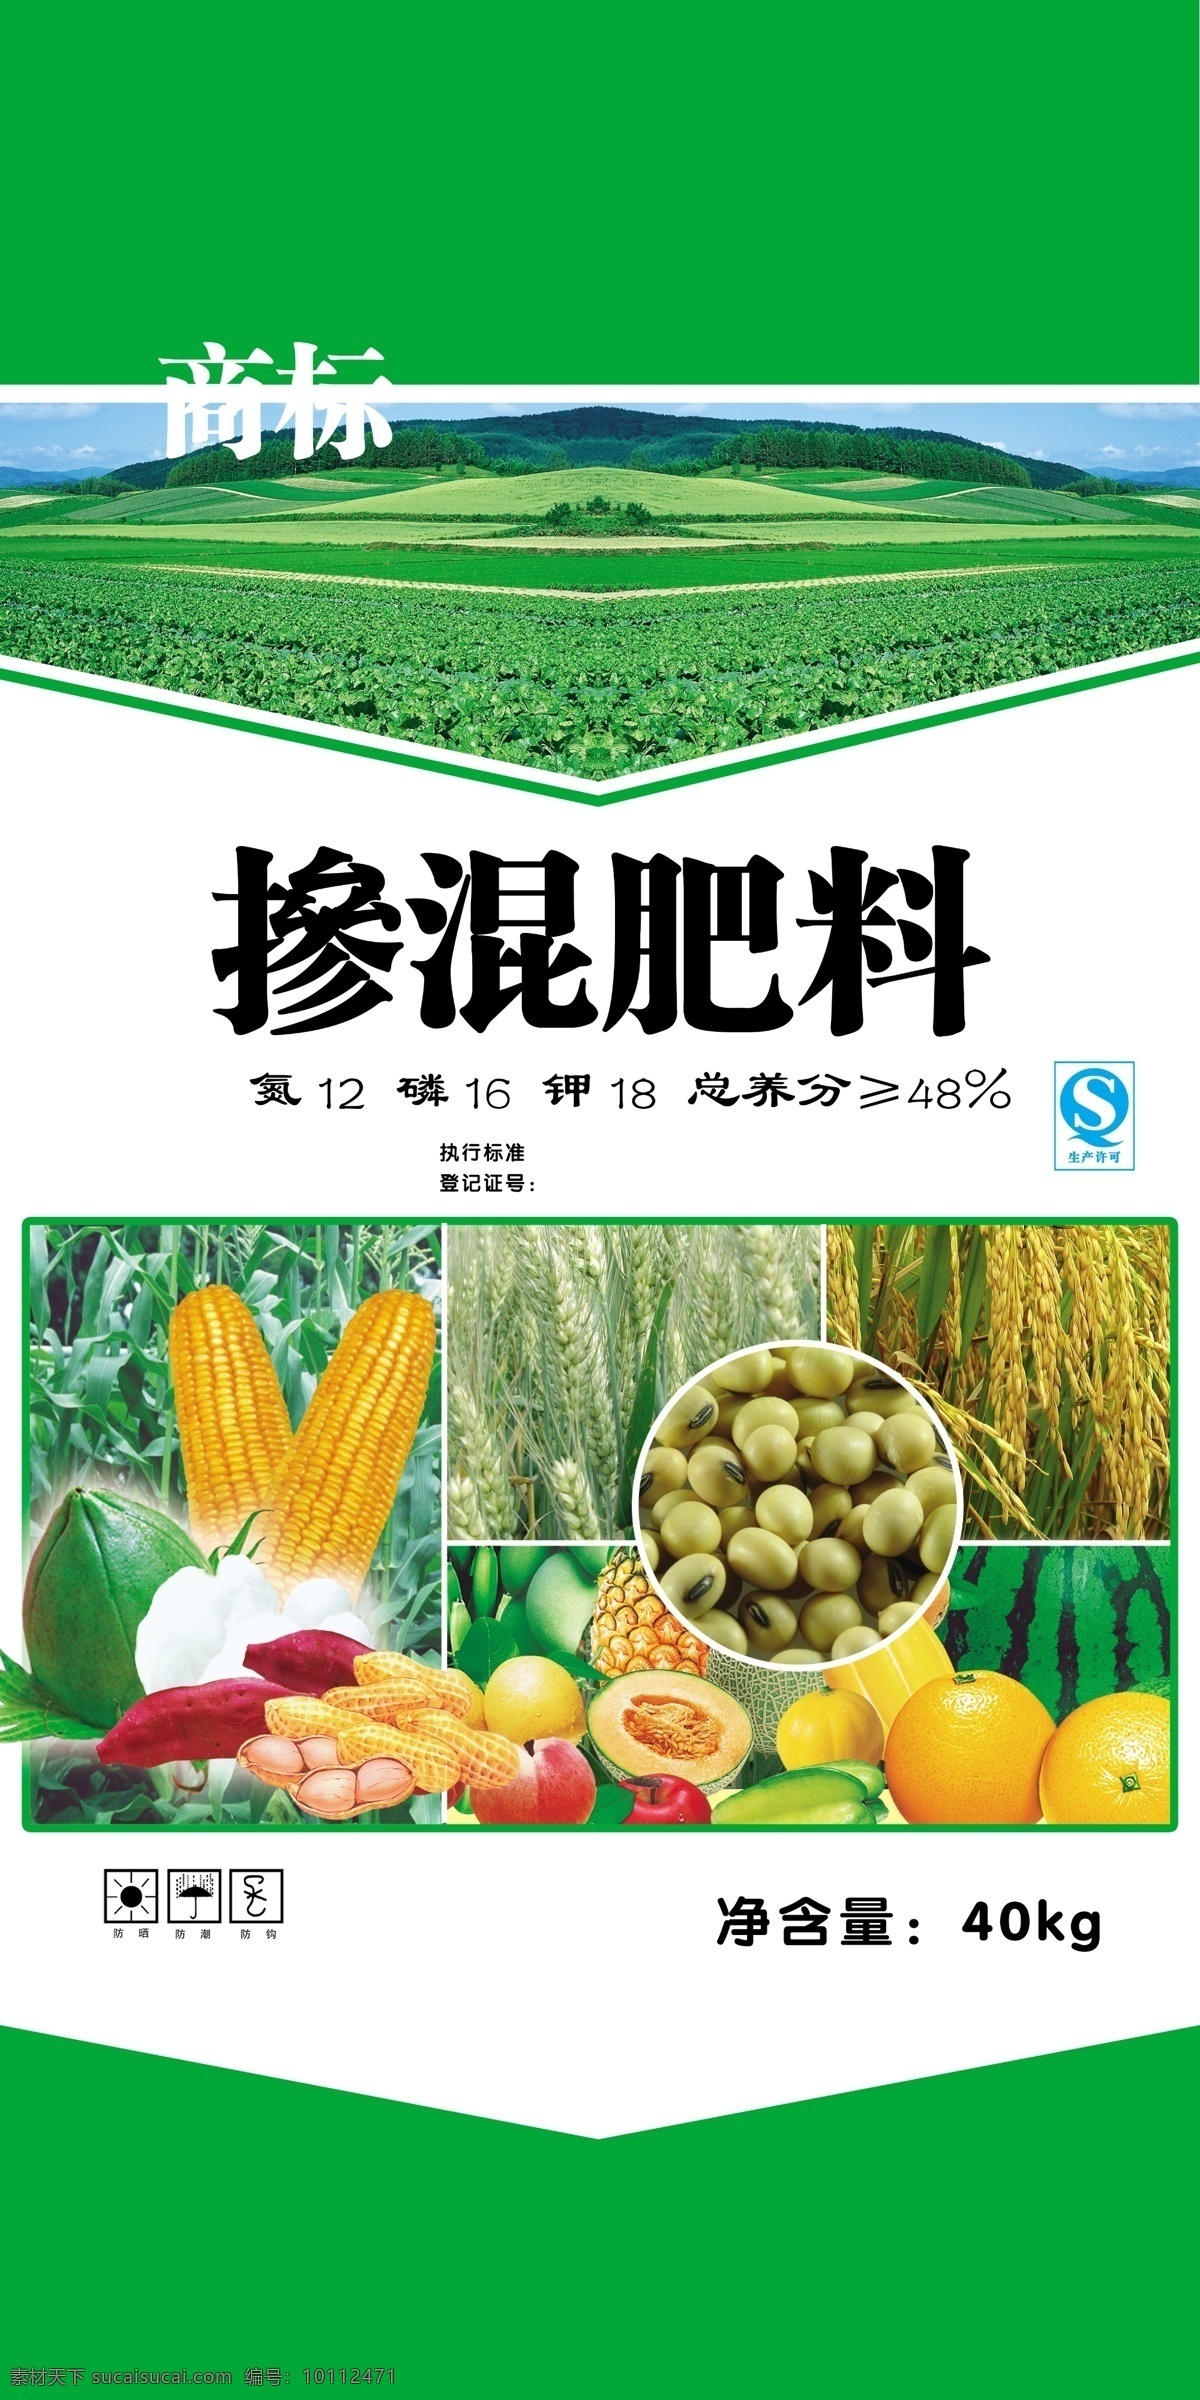 肥料包装 肥料 掺混肥料 玉米 水稻 水果 包装设计 广告设计模板 源文件